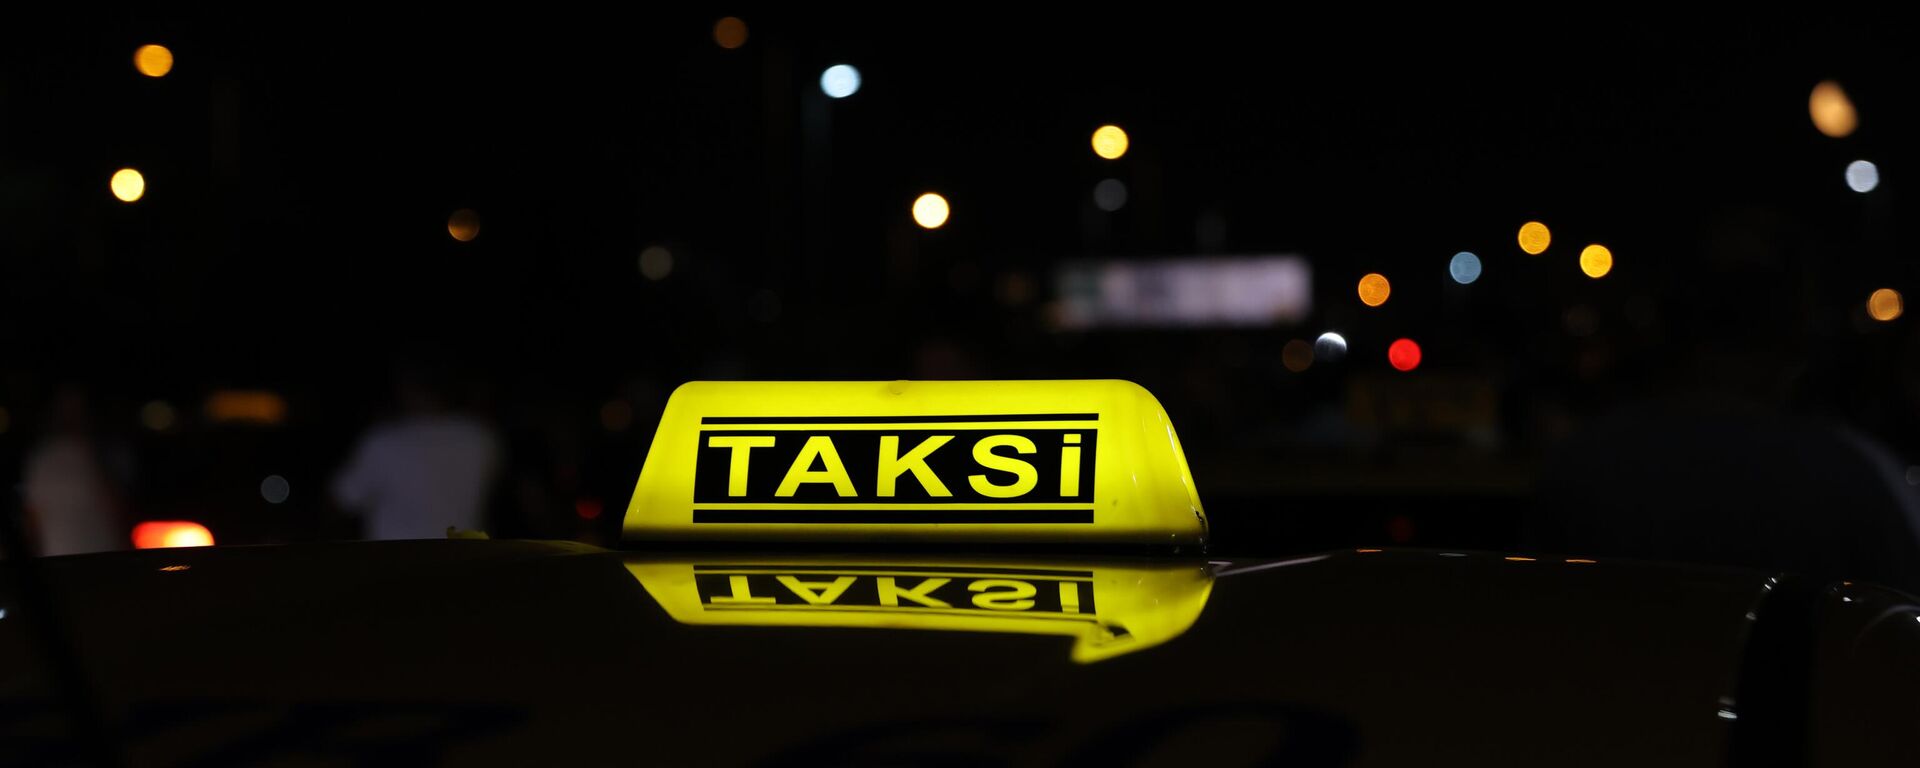  İstanbul'da bir grup taksici konvoy oluşturarak taksimetre ücretlerine yüzde 100 zam yapılmasını talep etti. Avrupa yakasında Fatih'teki Vatan Caddesi'nde, Anadolu yakasında Göztepe Köprüsü'nde toplanarak konvoy halinde Yenikapı Sahili'ne hareket eden çok sayıda taksici taksimetre ücretlerine zam talebinde bulundu. - Sputnik Türkiye, 1920, 08.08.2023